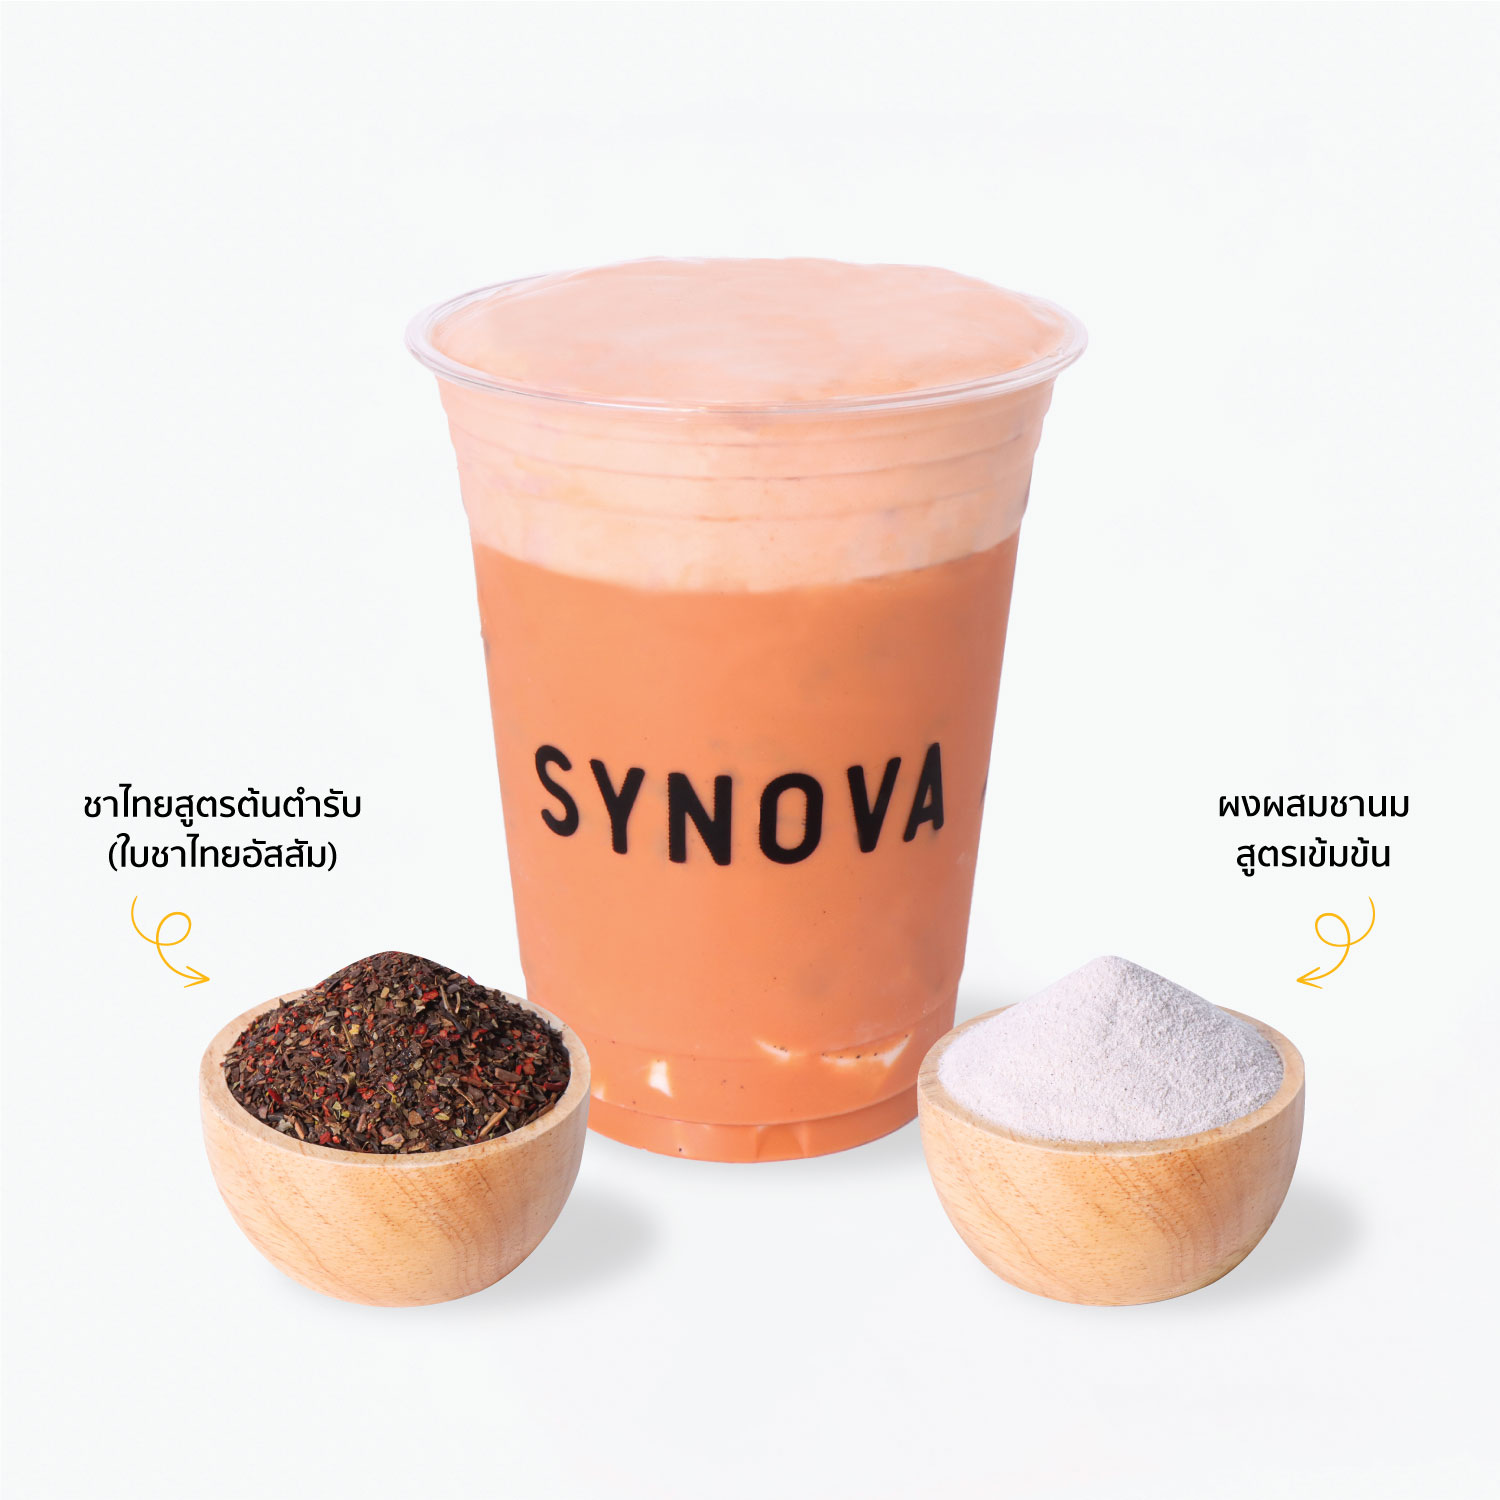 ยกเซ็ท (เมนูชาไทย)ผงเครื่องดื่มปรุงสำเร็จ : SYNOVA ชาไทย สูตรเข้มข้น (ยกกล่อง)